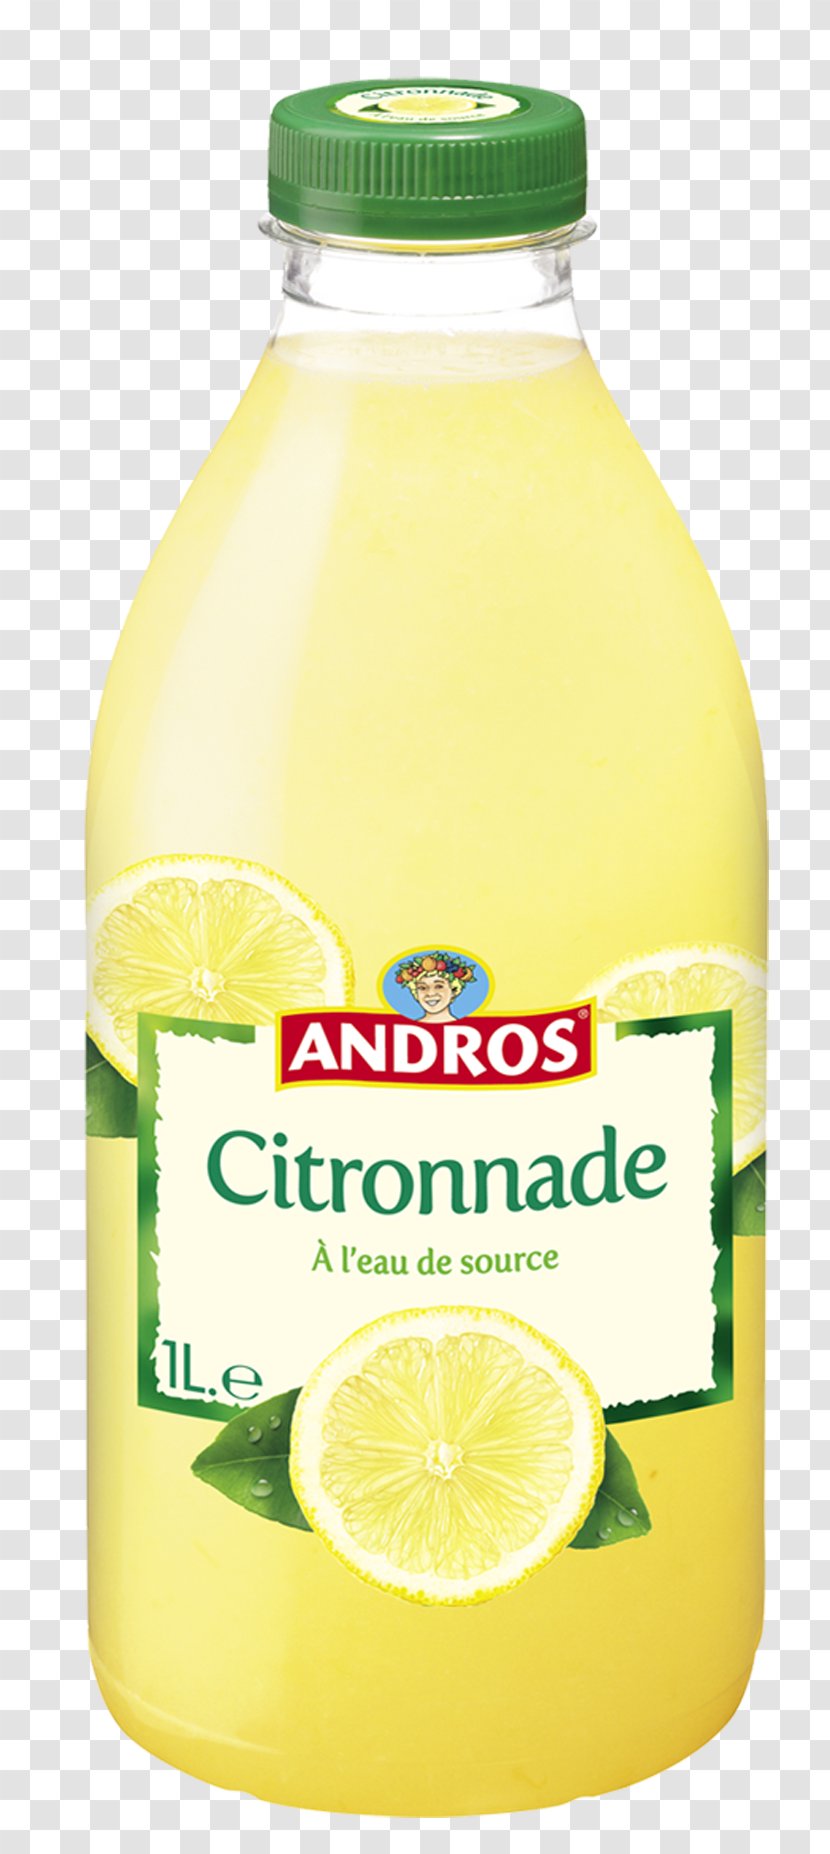 Lemon Juice Lime Andros France Fruchtsaft Transparent PNG